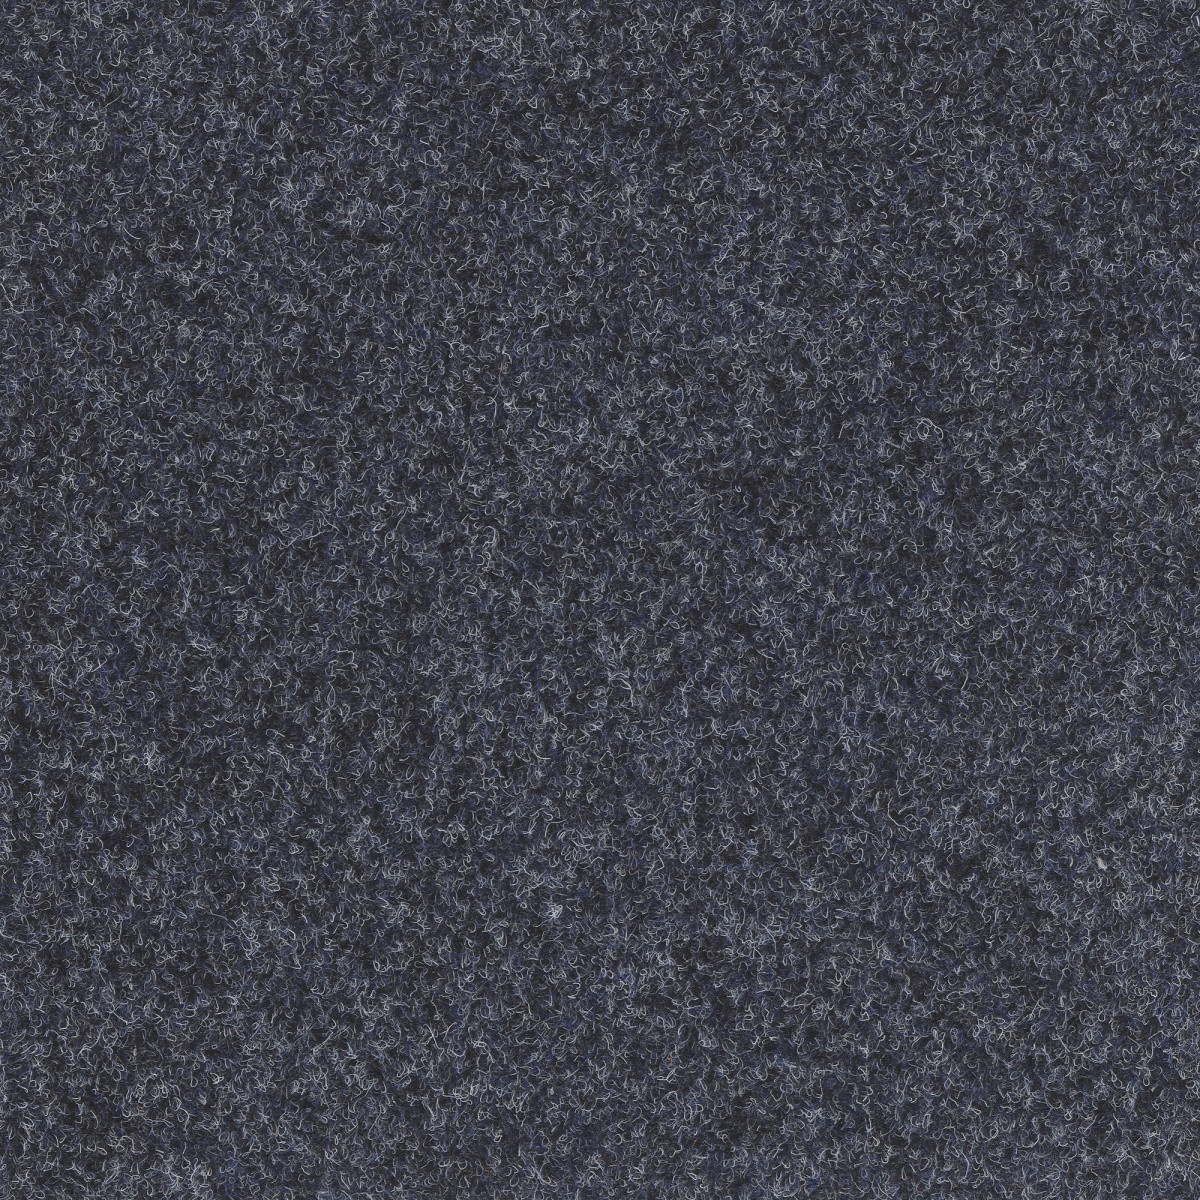 Koberec metráž Omega Cfl 55162 modro-šedá